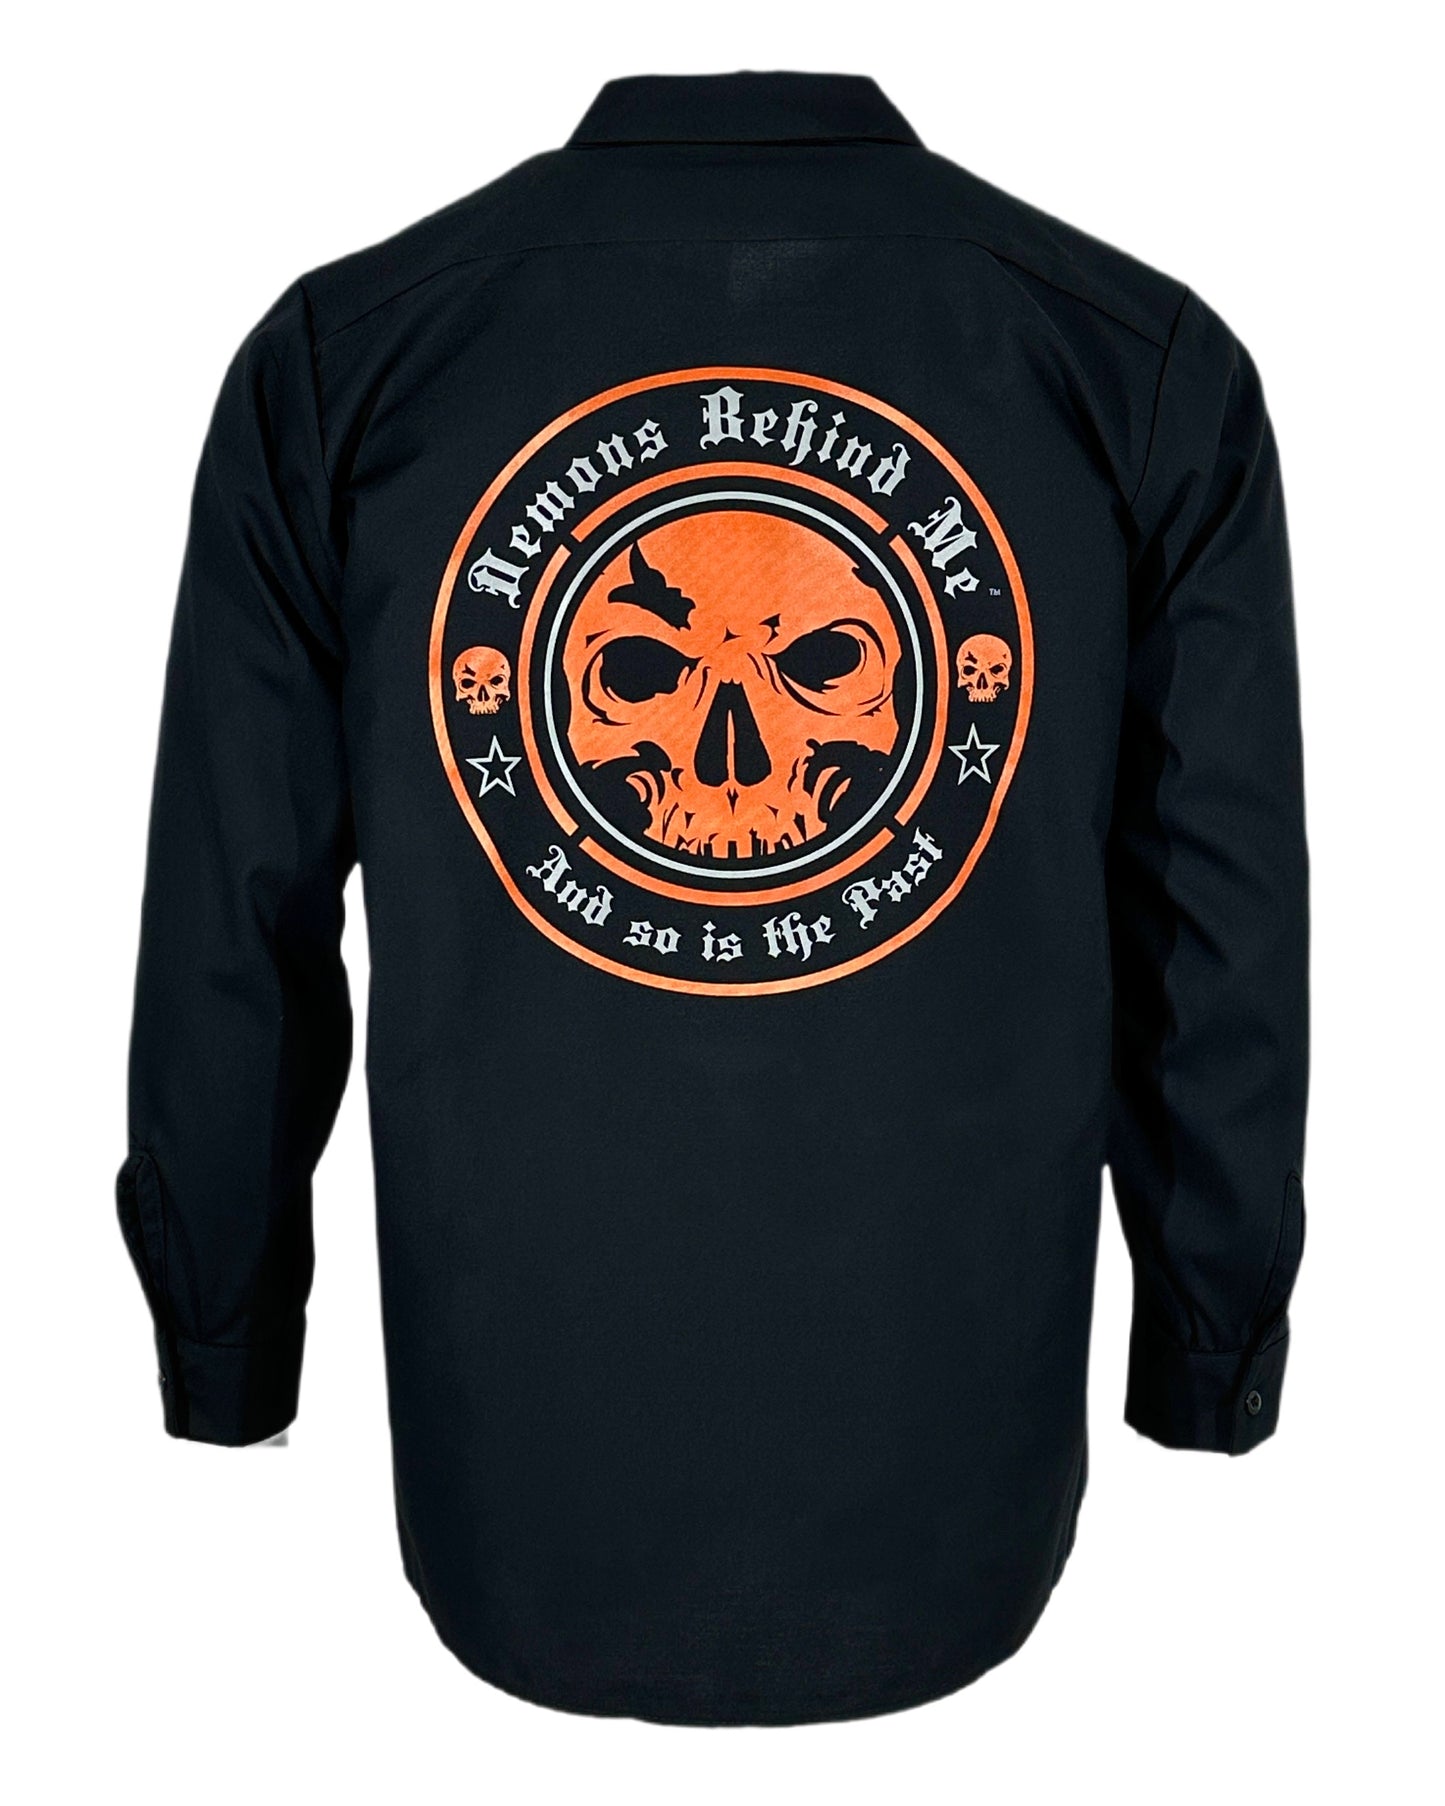 Men's Long Sleeve Black Embroidered Shop Shirt - Orange Logo